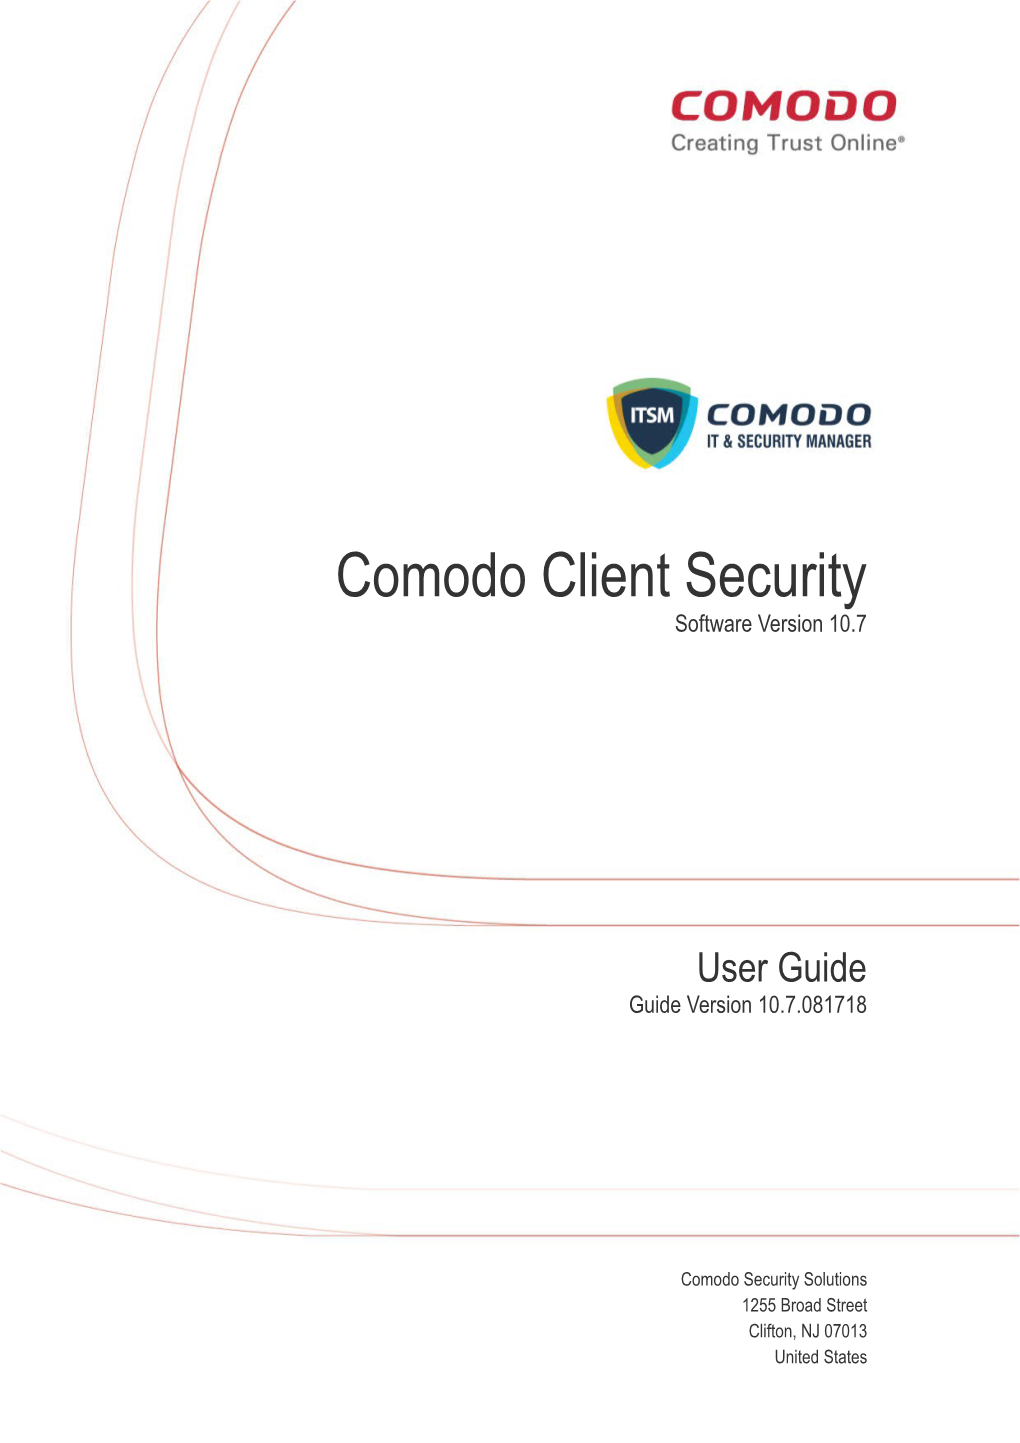 Comodo Client Security User Guide | © 2018 Comodo Security Solutions Inc